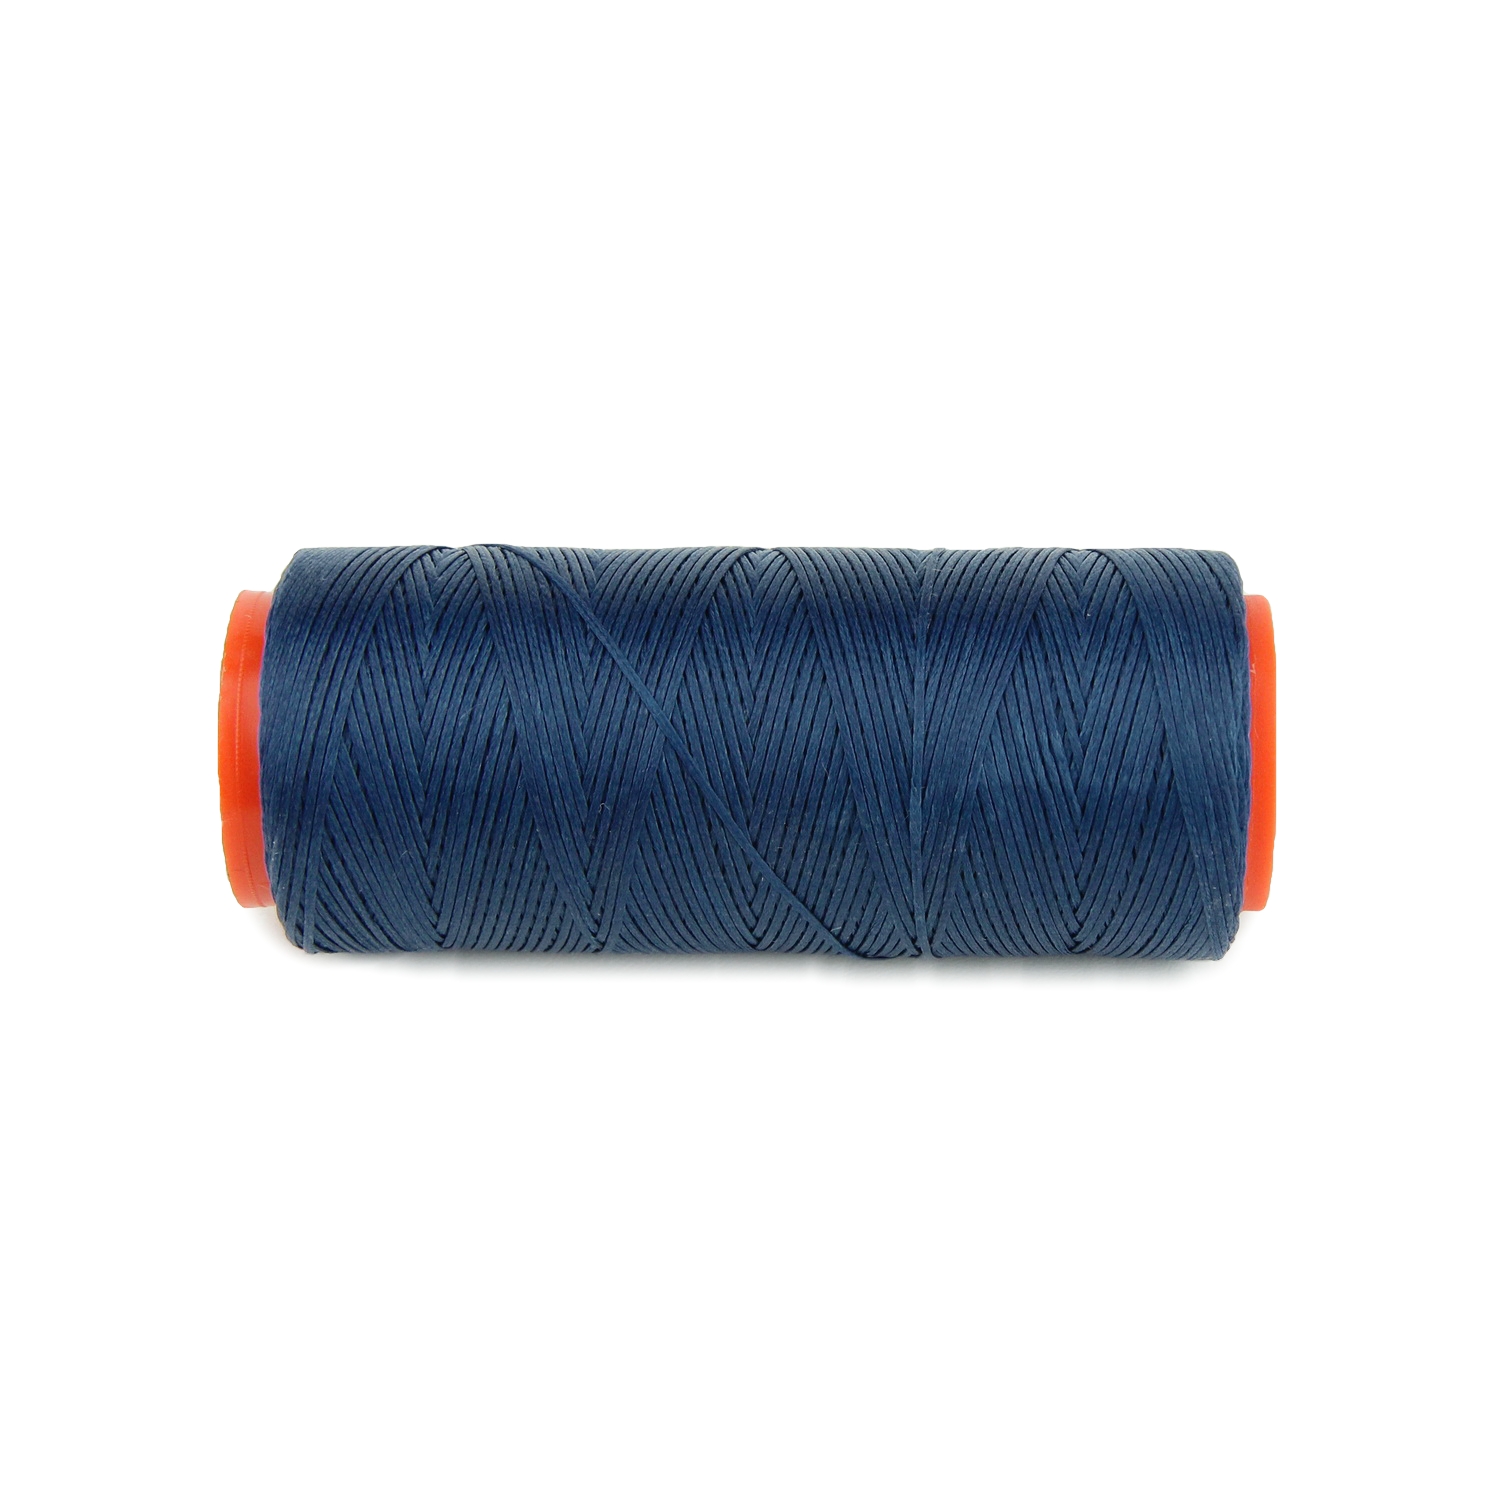 Нить для перетяжки руля вощеная (синий цвет 6681), толщина 0.8 мм, длина 100 метров "Турция" детальная фотка